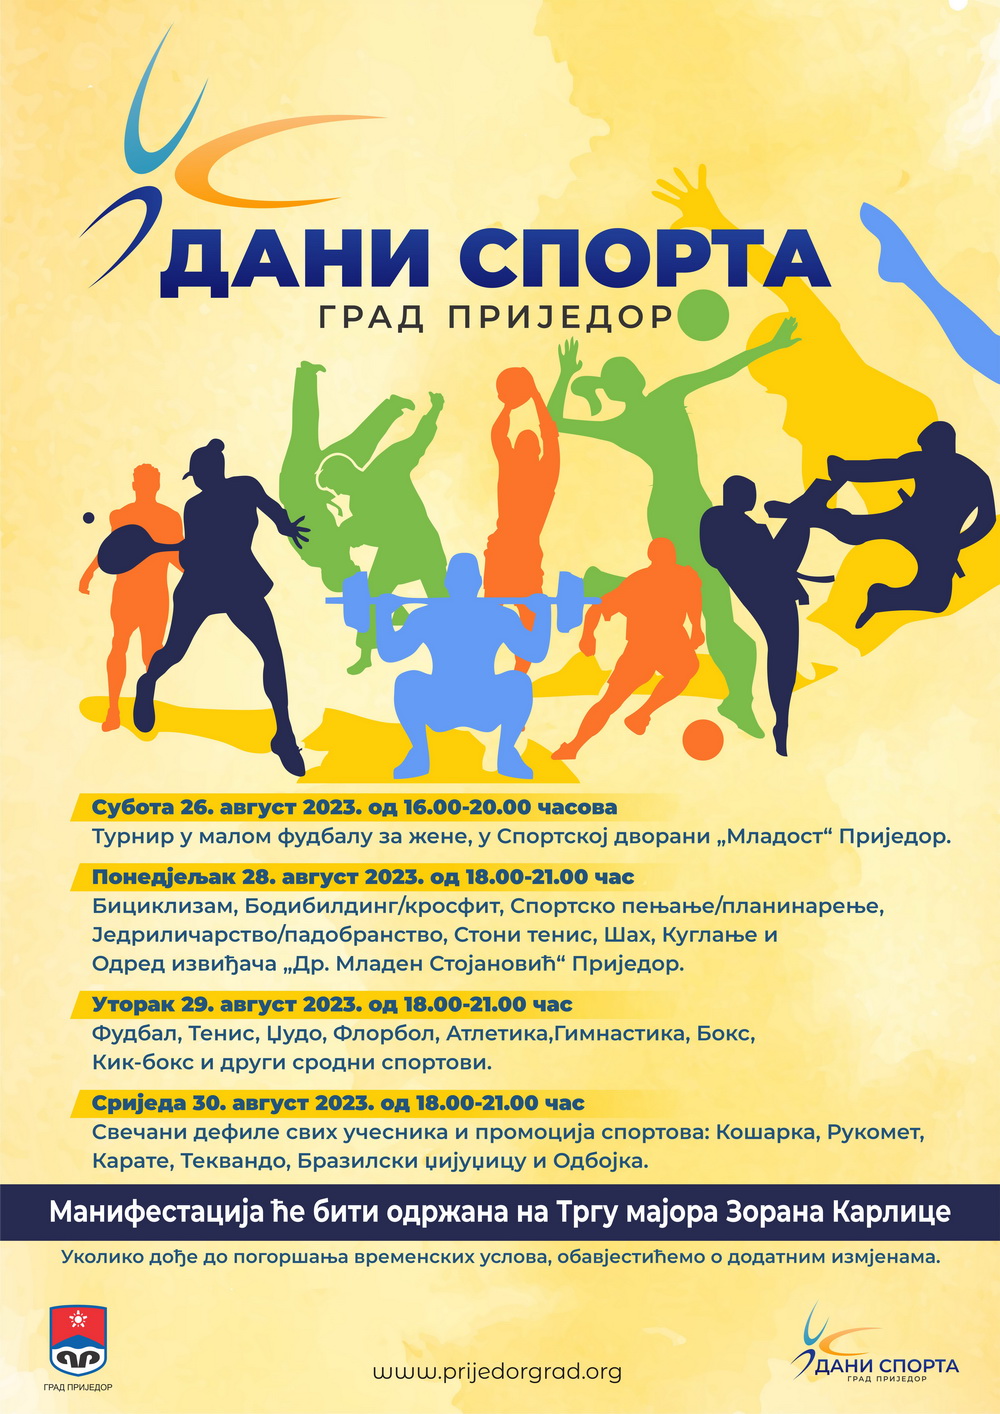 Manifestacija ” Dani sporta” u Prijedoru od 26. do 30. avgusta